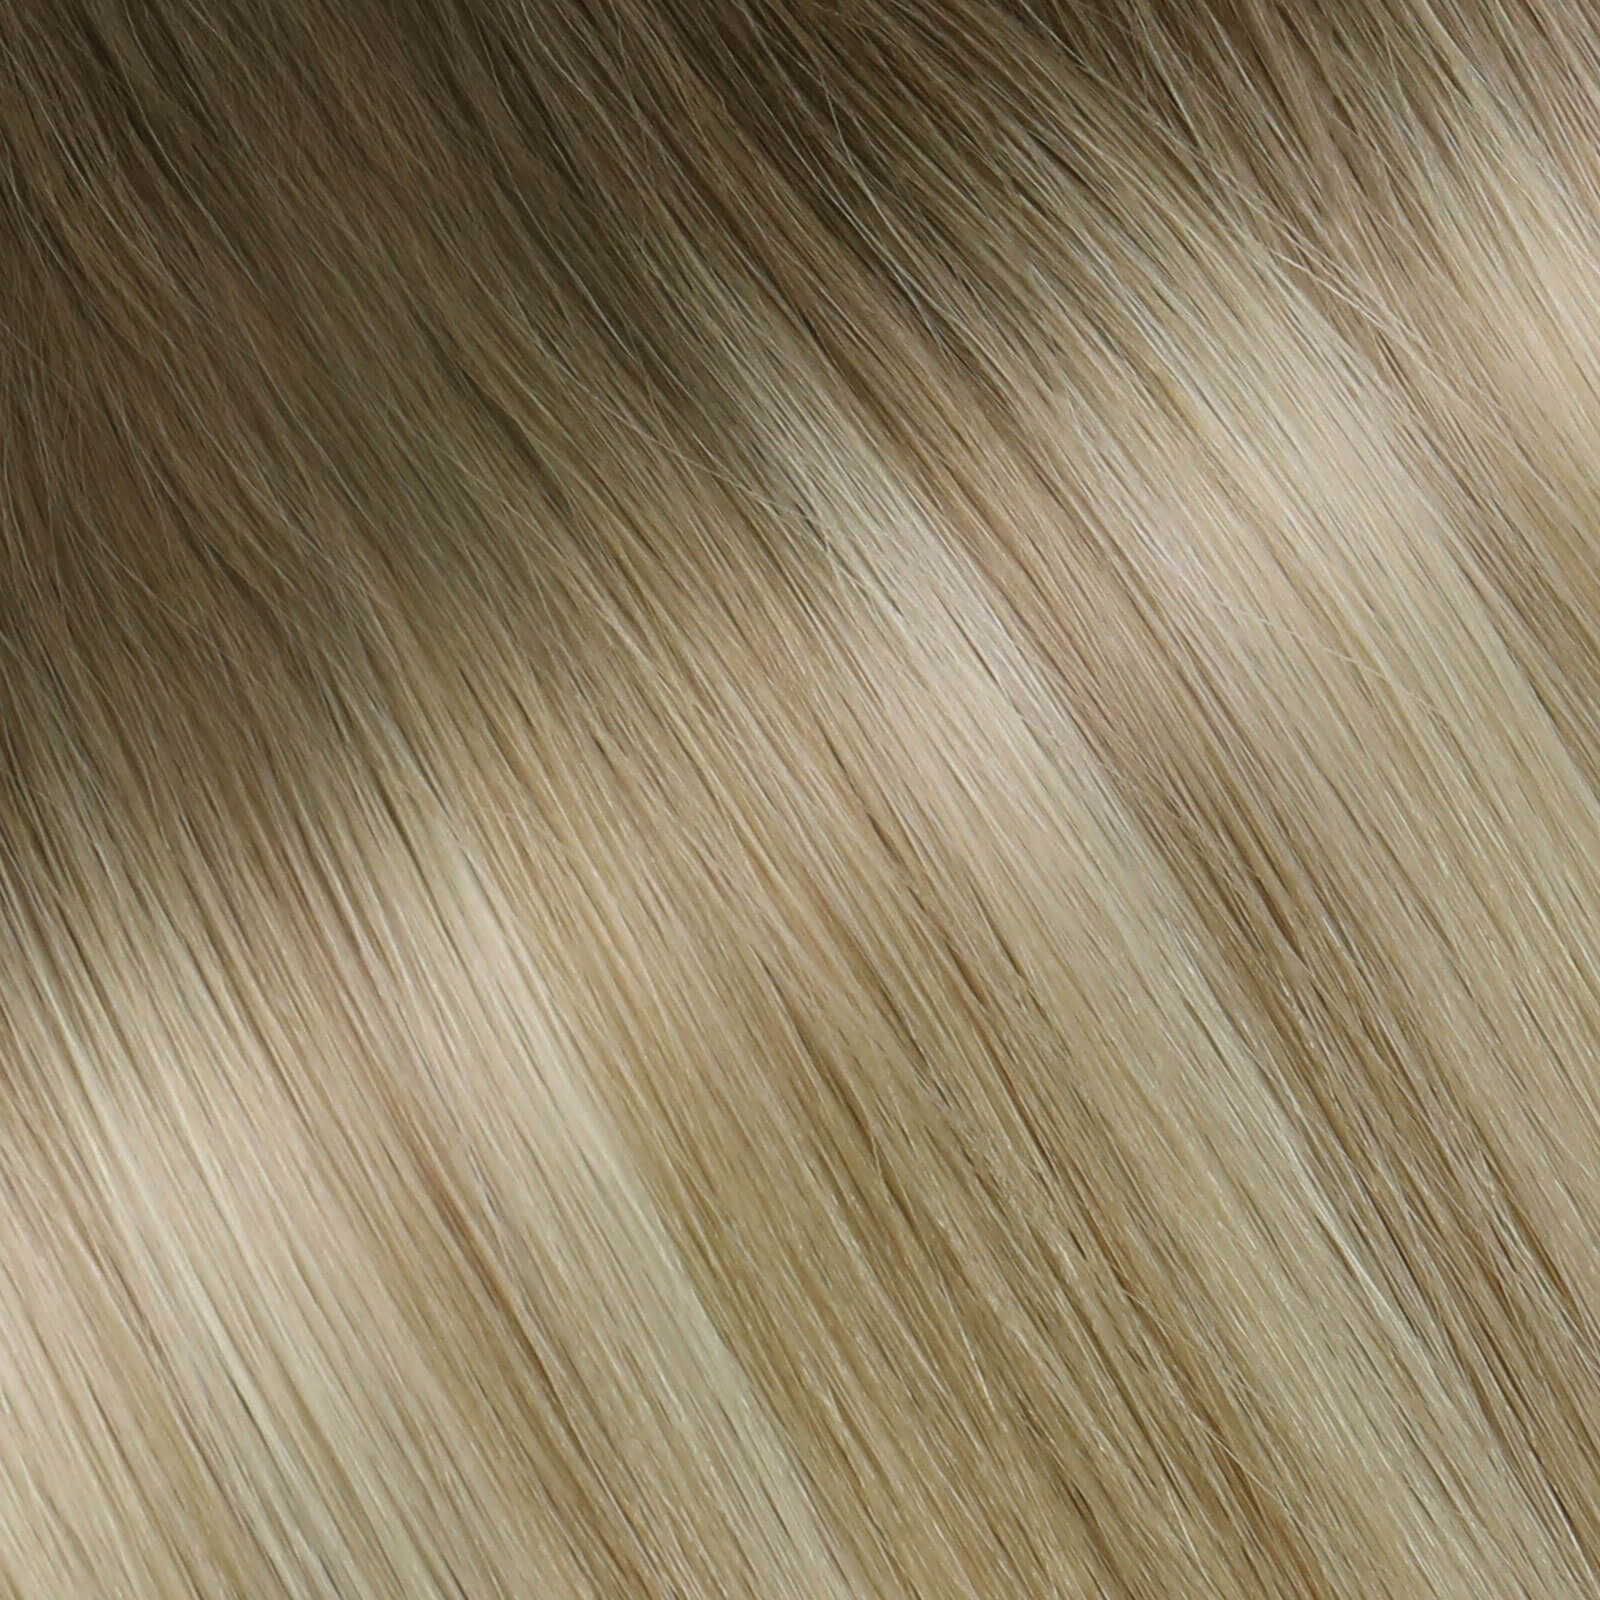 virgin u tip hair balayage color customize color #8/27/60